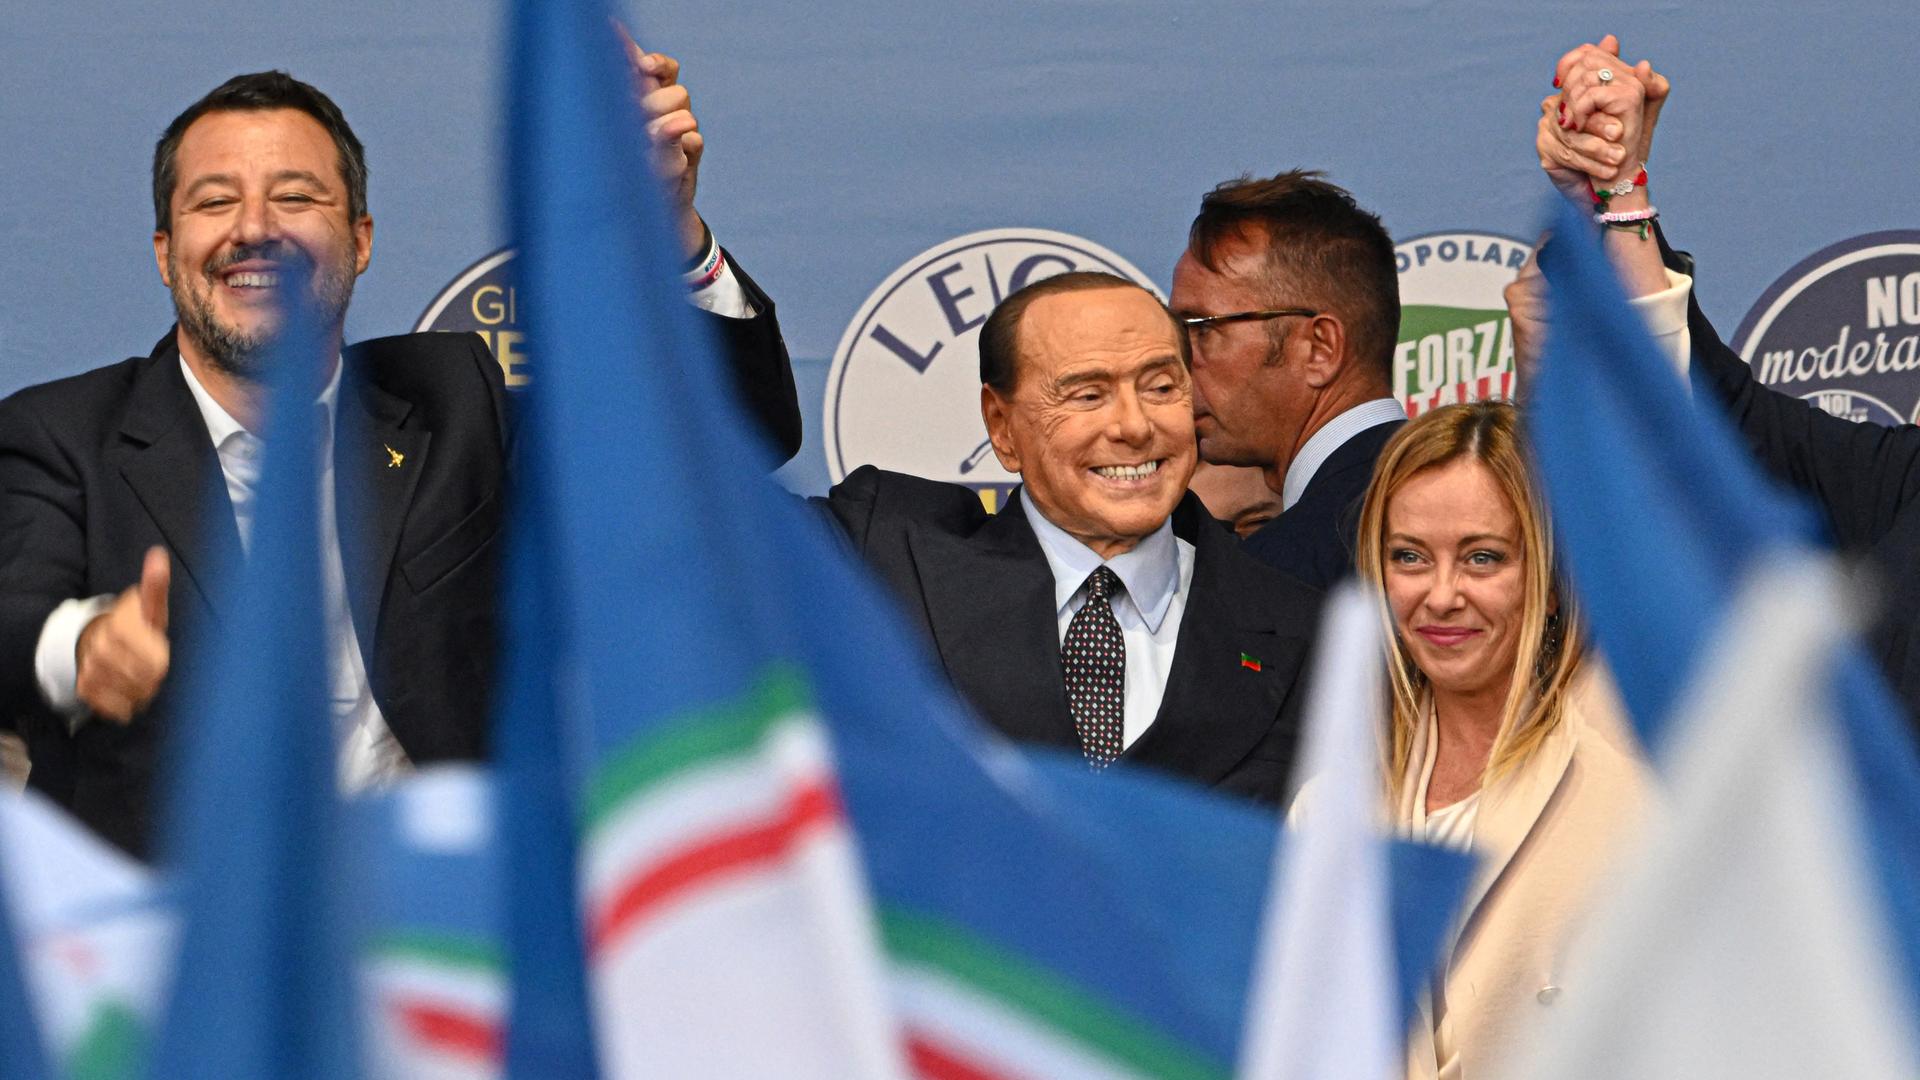 Von links: Chef der Lega Partei Matteo Salvini, Forza Chef Silvio Berlusconi und Giorgia Meloni zusammen auf einer Wahlbühne am 22. September in Rom, Italien. Vor ihnen wehen Fahnen.